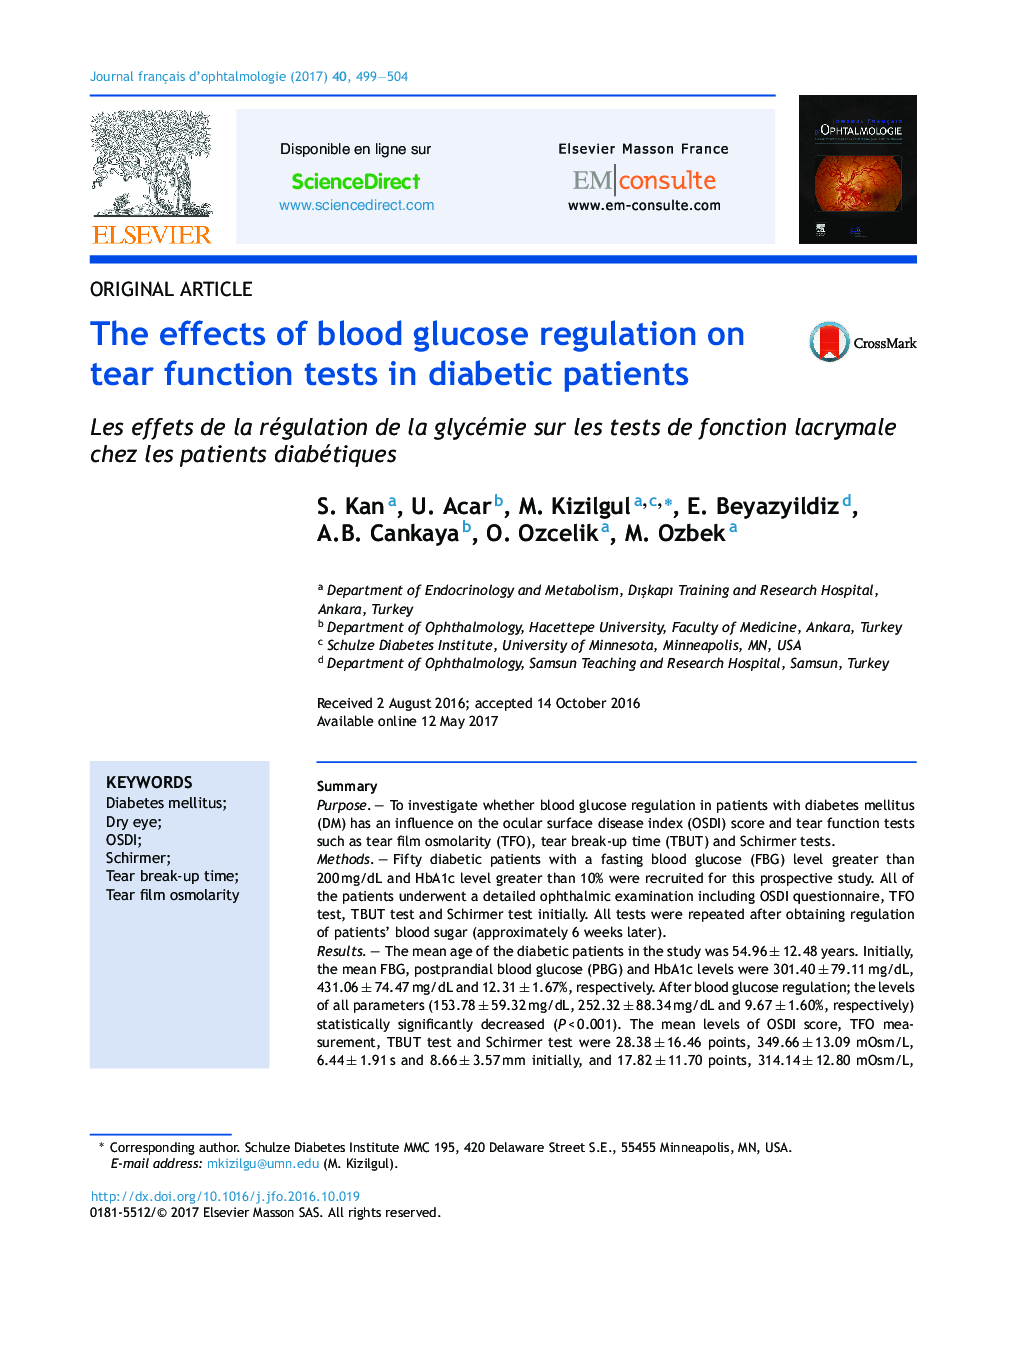 اثرات تنظیم قند خون بر تست عملکرد اشک در بیماران دیابتی 